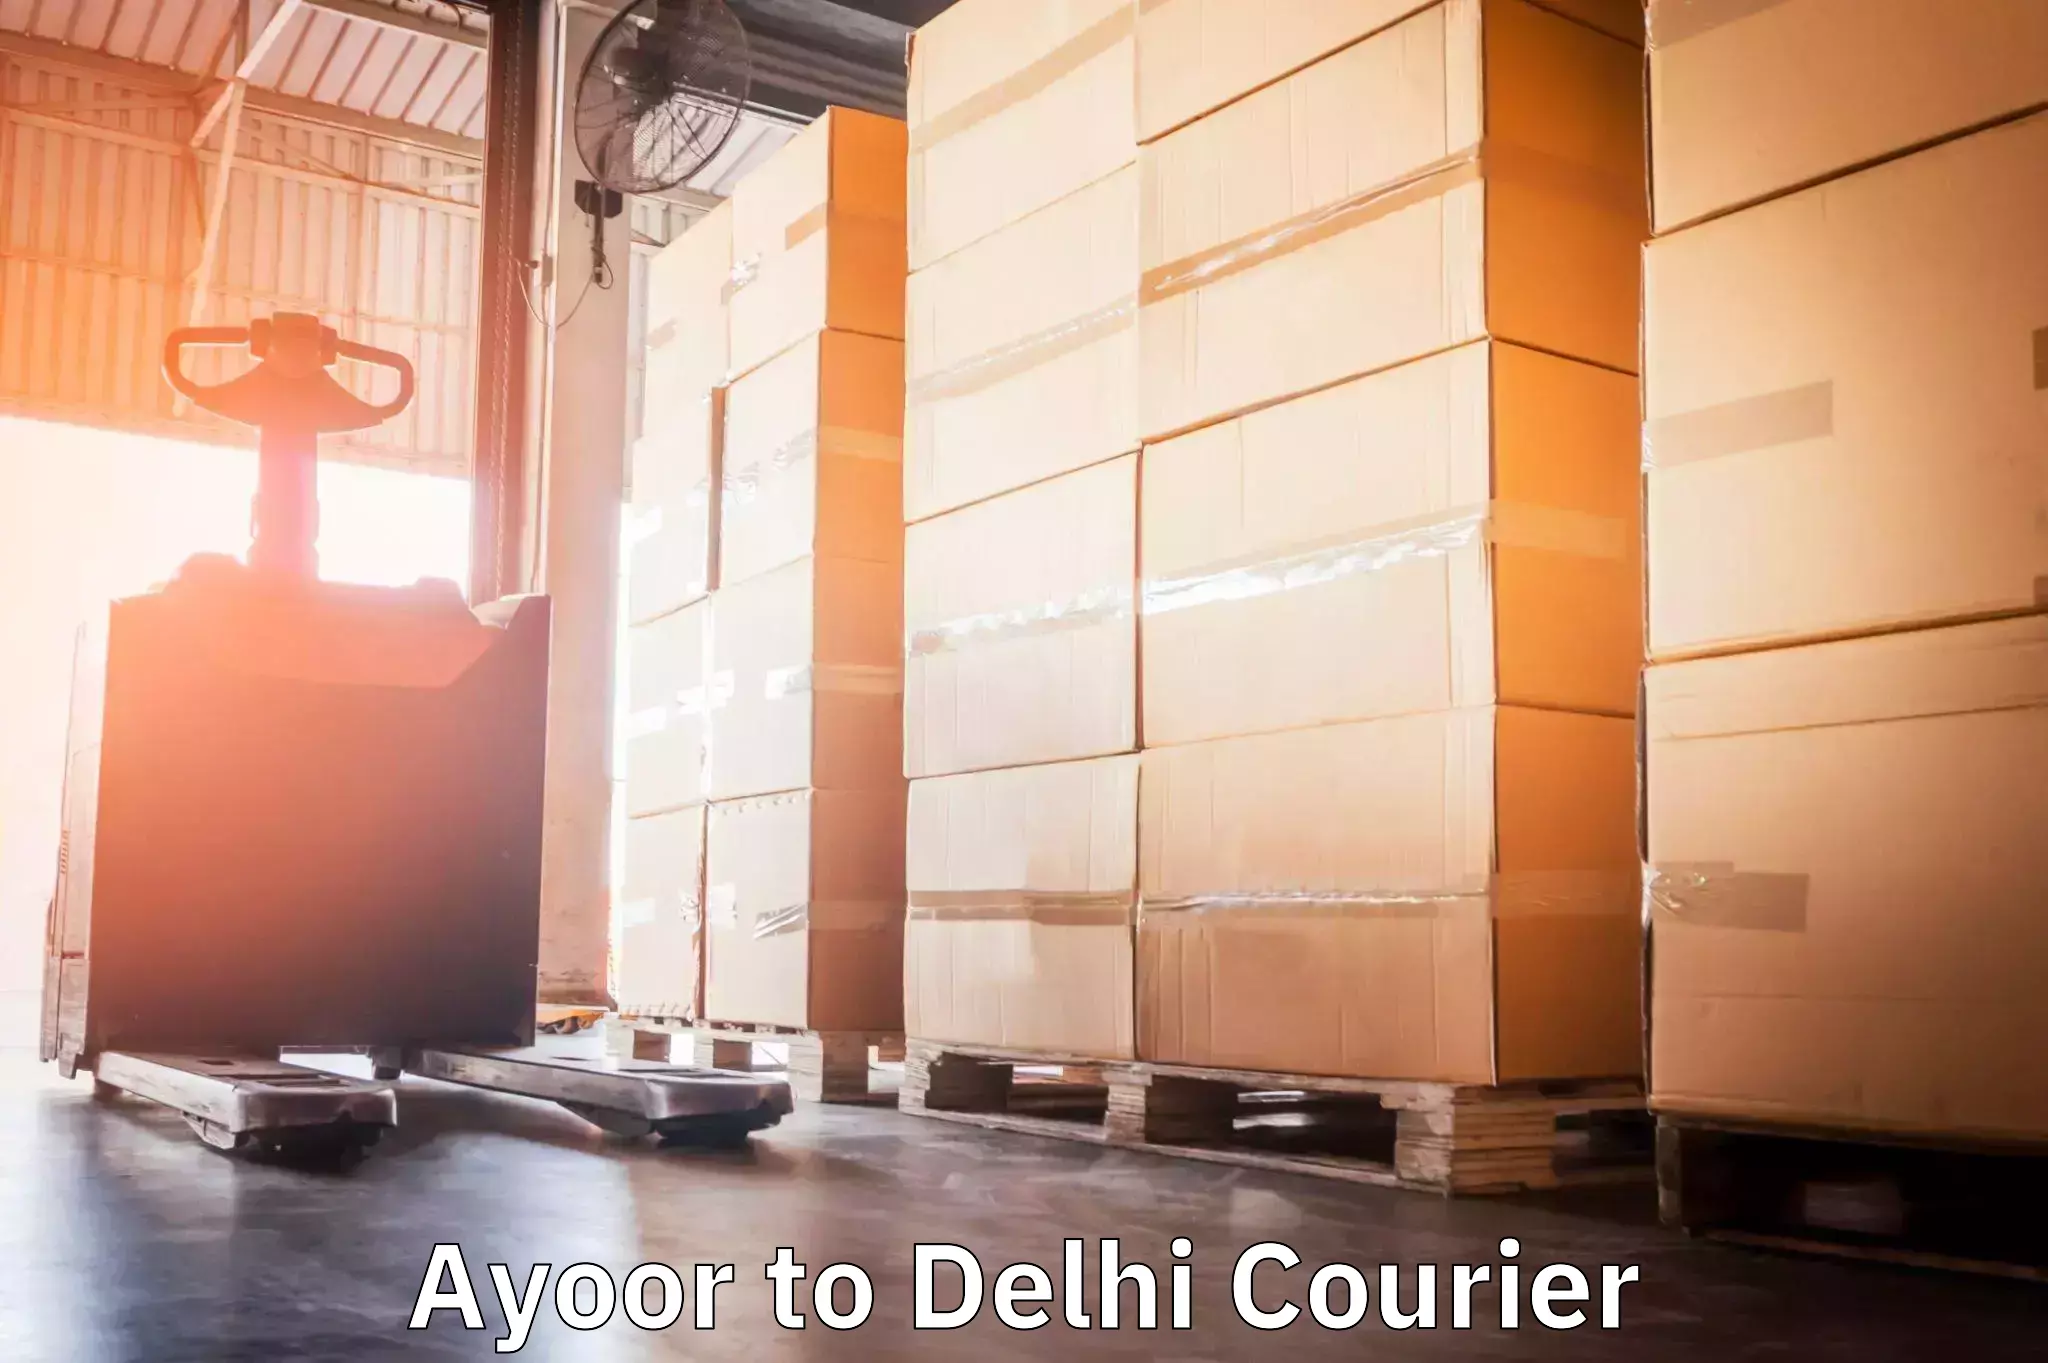 Cash on delivery service Ayoor to Delhi